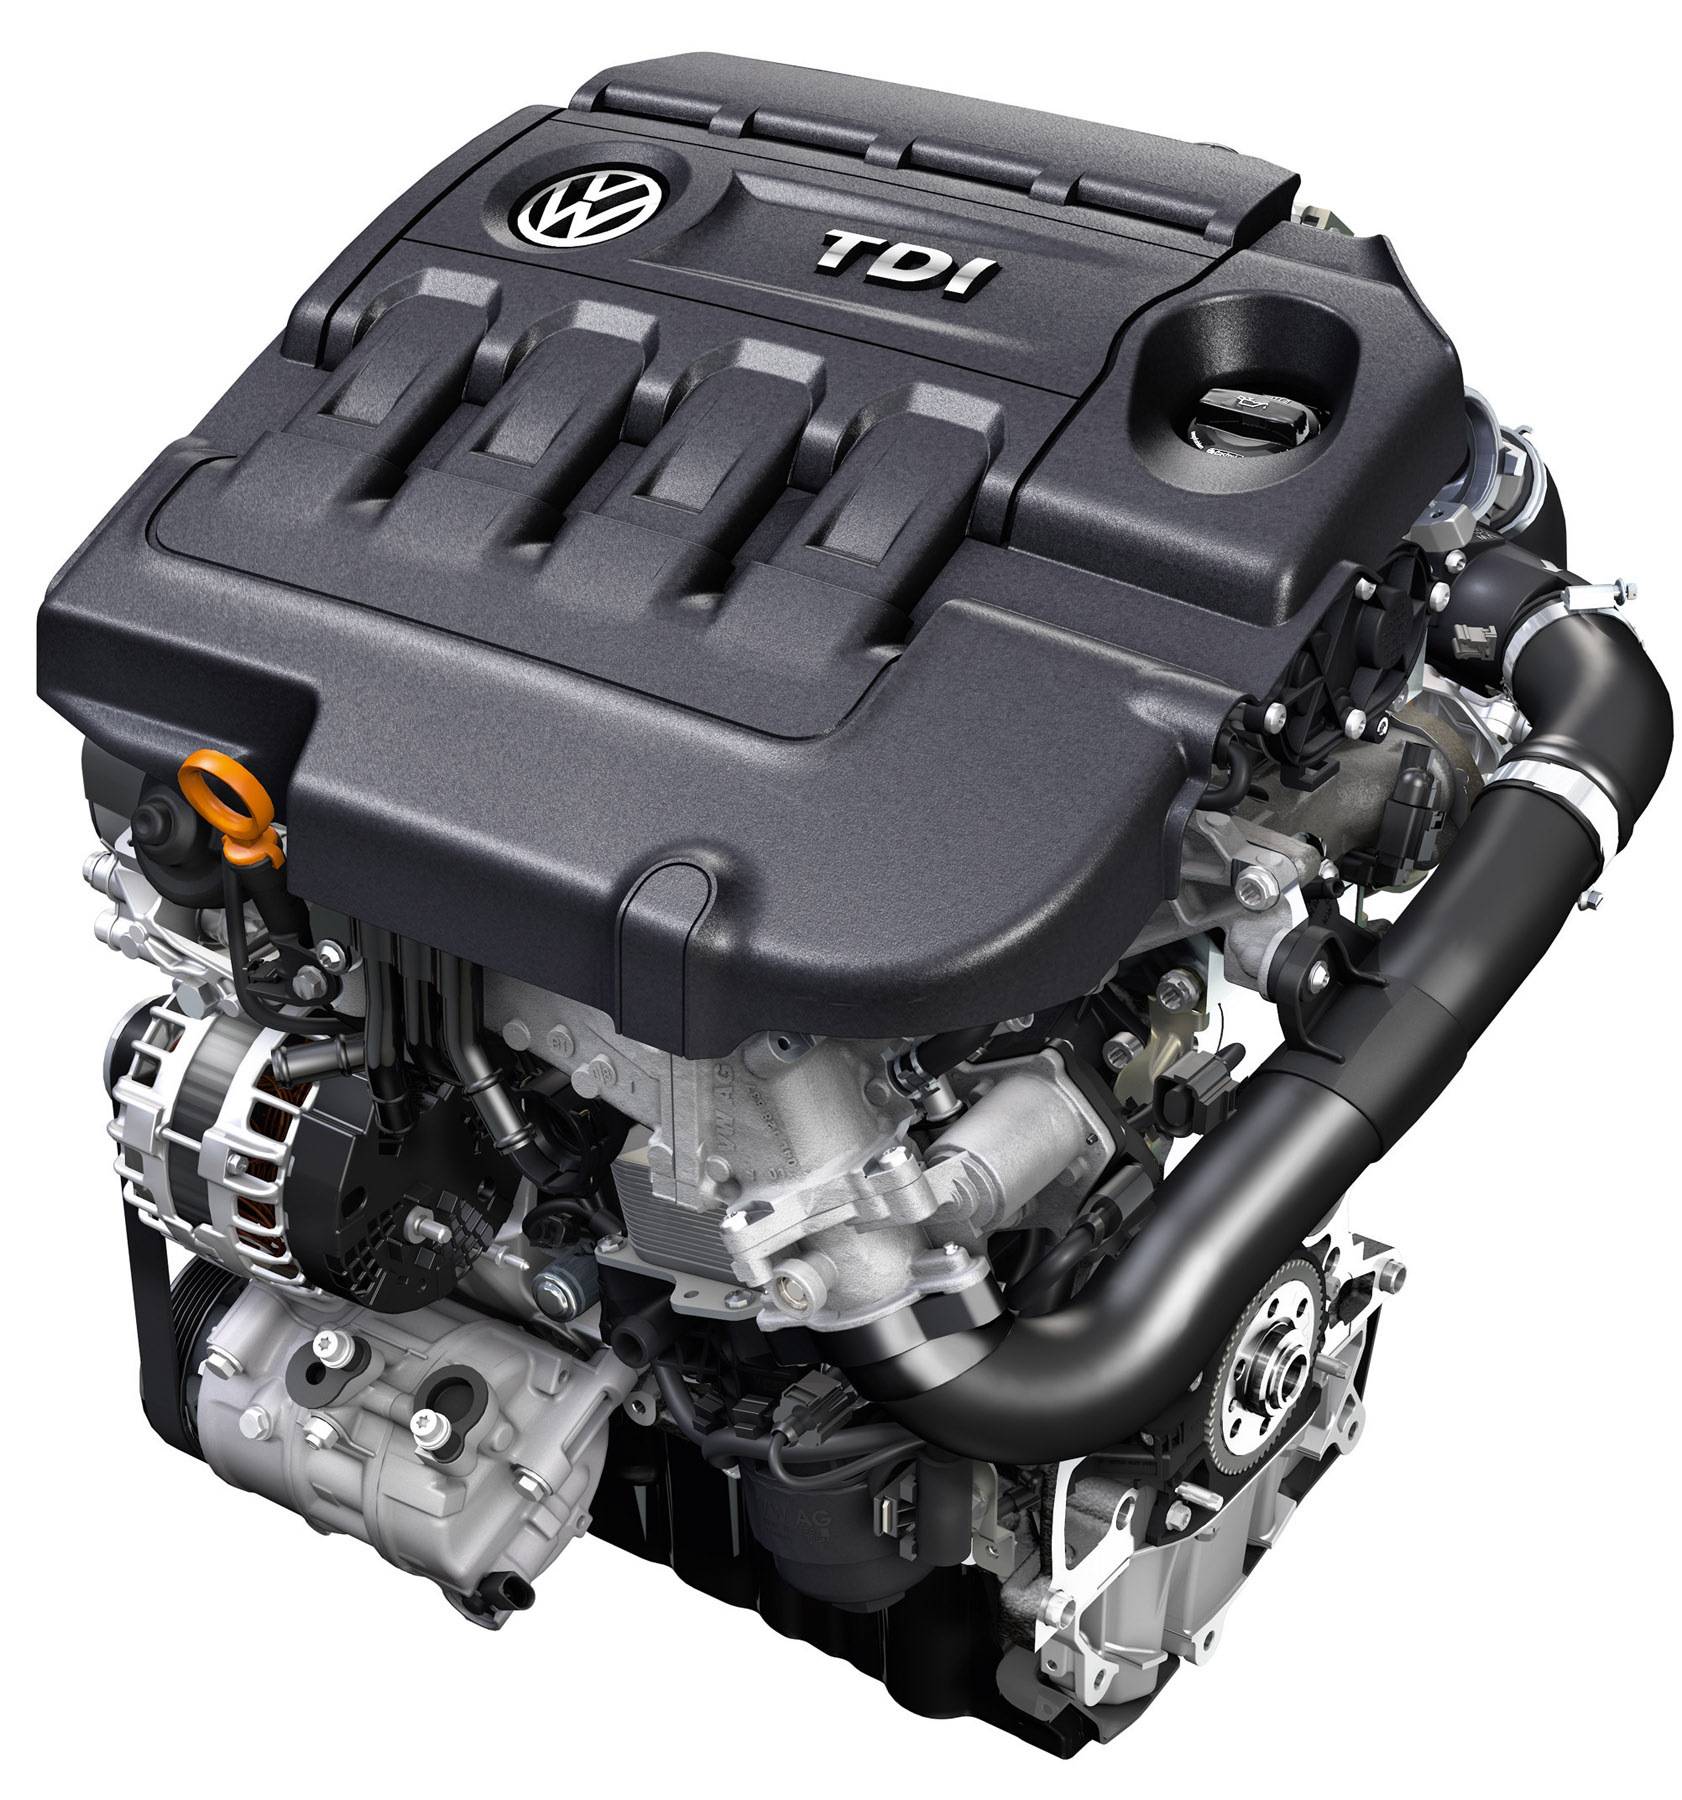 Что такое tdi двигатель и чем он отличается от tsi? | в помощь автолюбителю